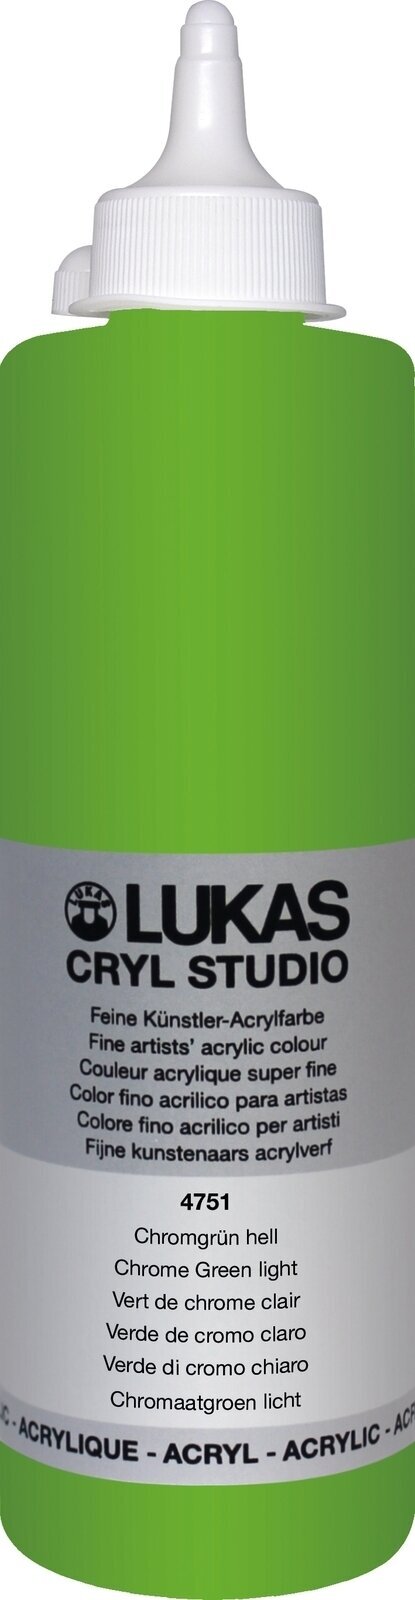 Peinture acrylique Lukas Cryl Studio Acrylic Paint Plastic Bottle Peinture acrylique Chrome Green Light 500 ml 1 pc